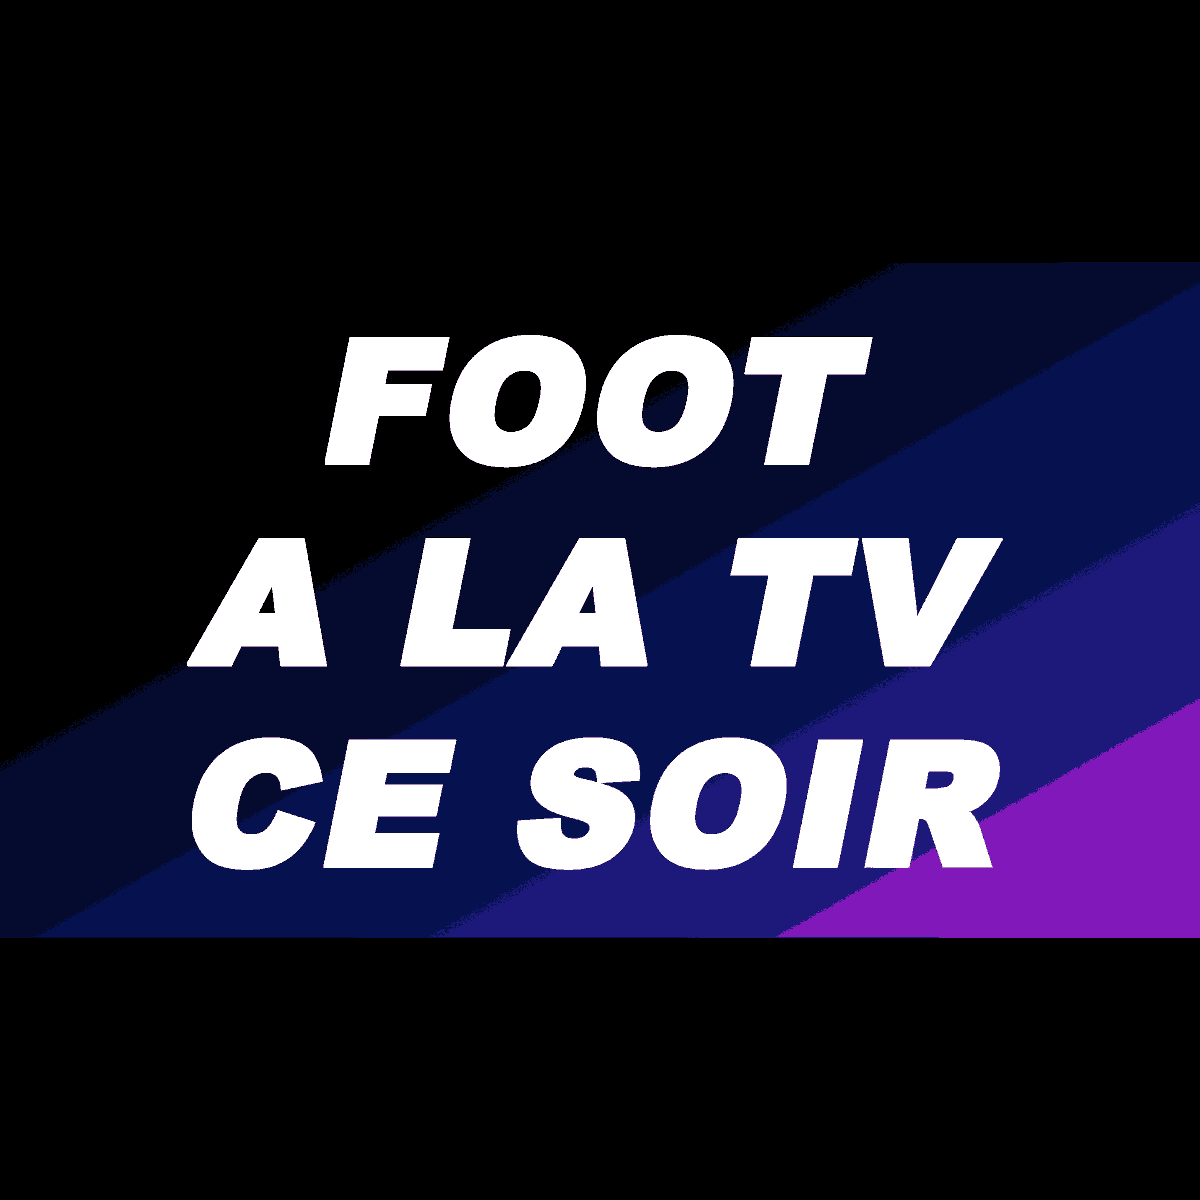 Live Foot match ce soir et aujourd'hui : Programme Complet Calendrier